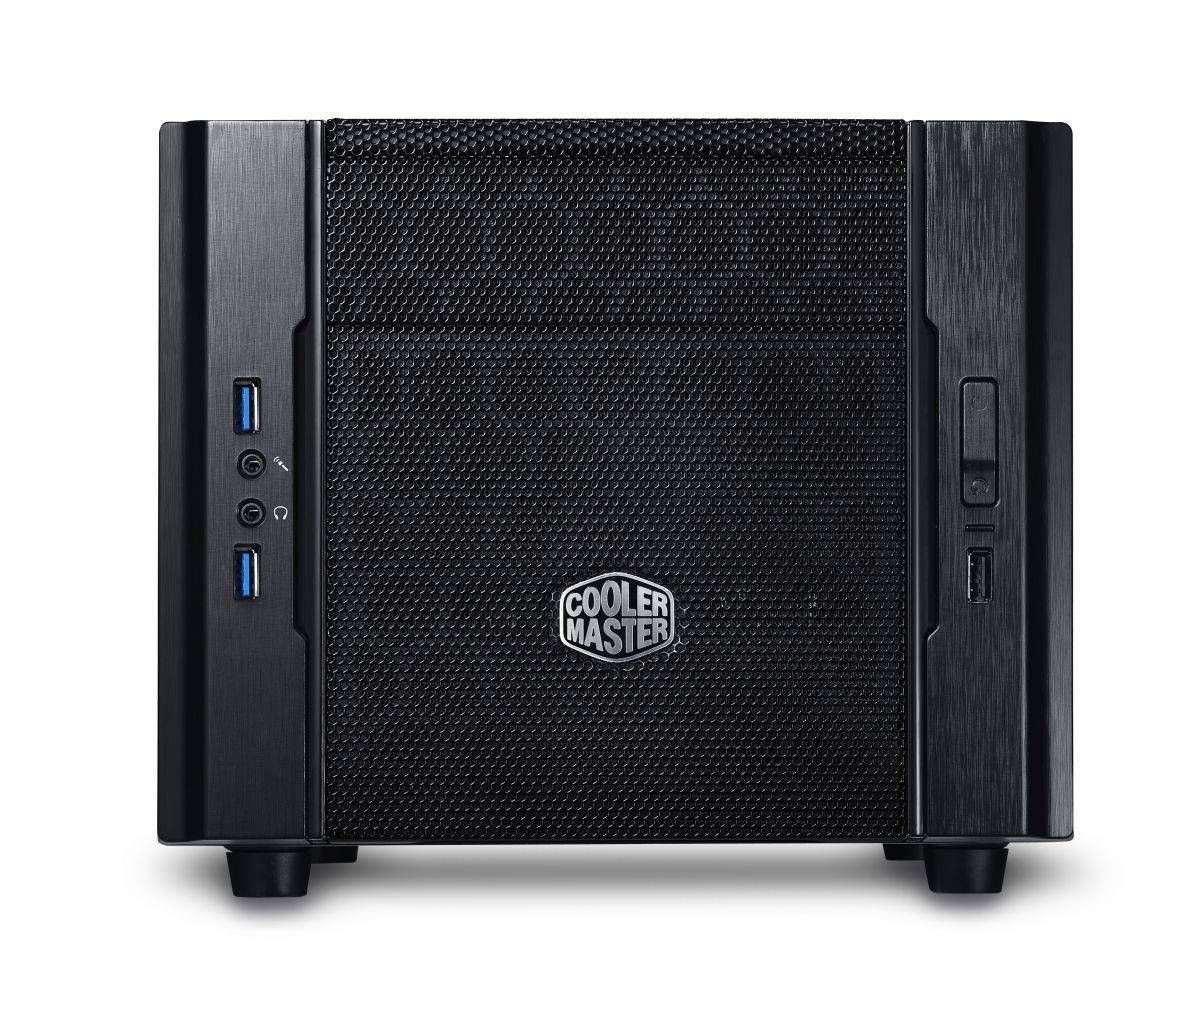 Cooler Master Case Elite 130 Black/Black (совместим с обычным опциональным БП), USB 3.0 x1, USB 2.0 x 2, 12мм fan,